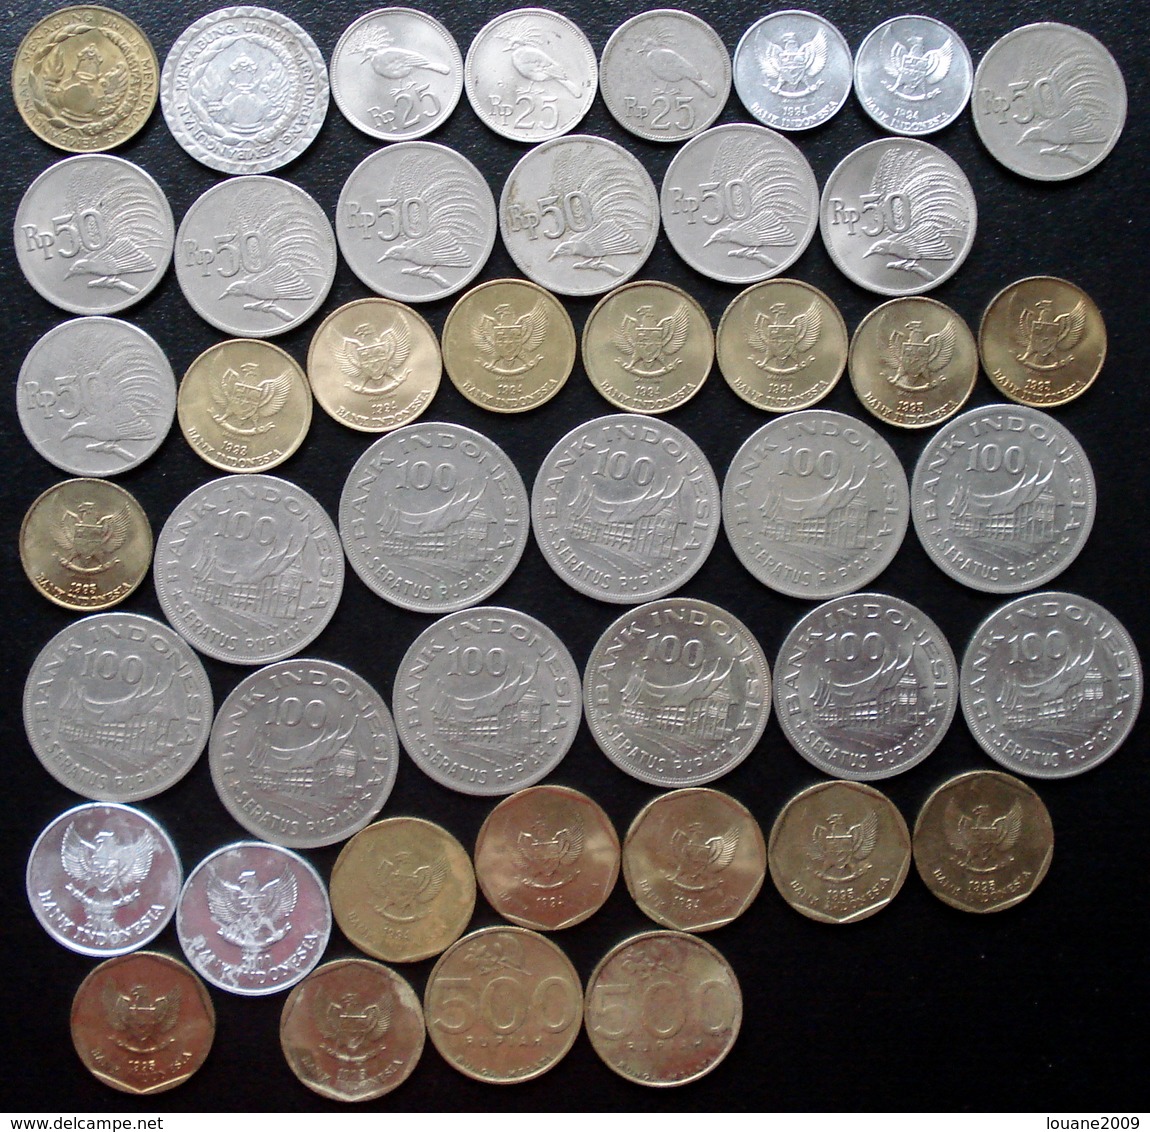 Indonésie Indonésia - 10 - 25 - 50 - 100 - 500 Rupiah 1974 à 2001 Lot 43 Pièces De Monnaie - Indonésie